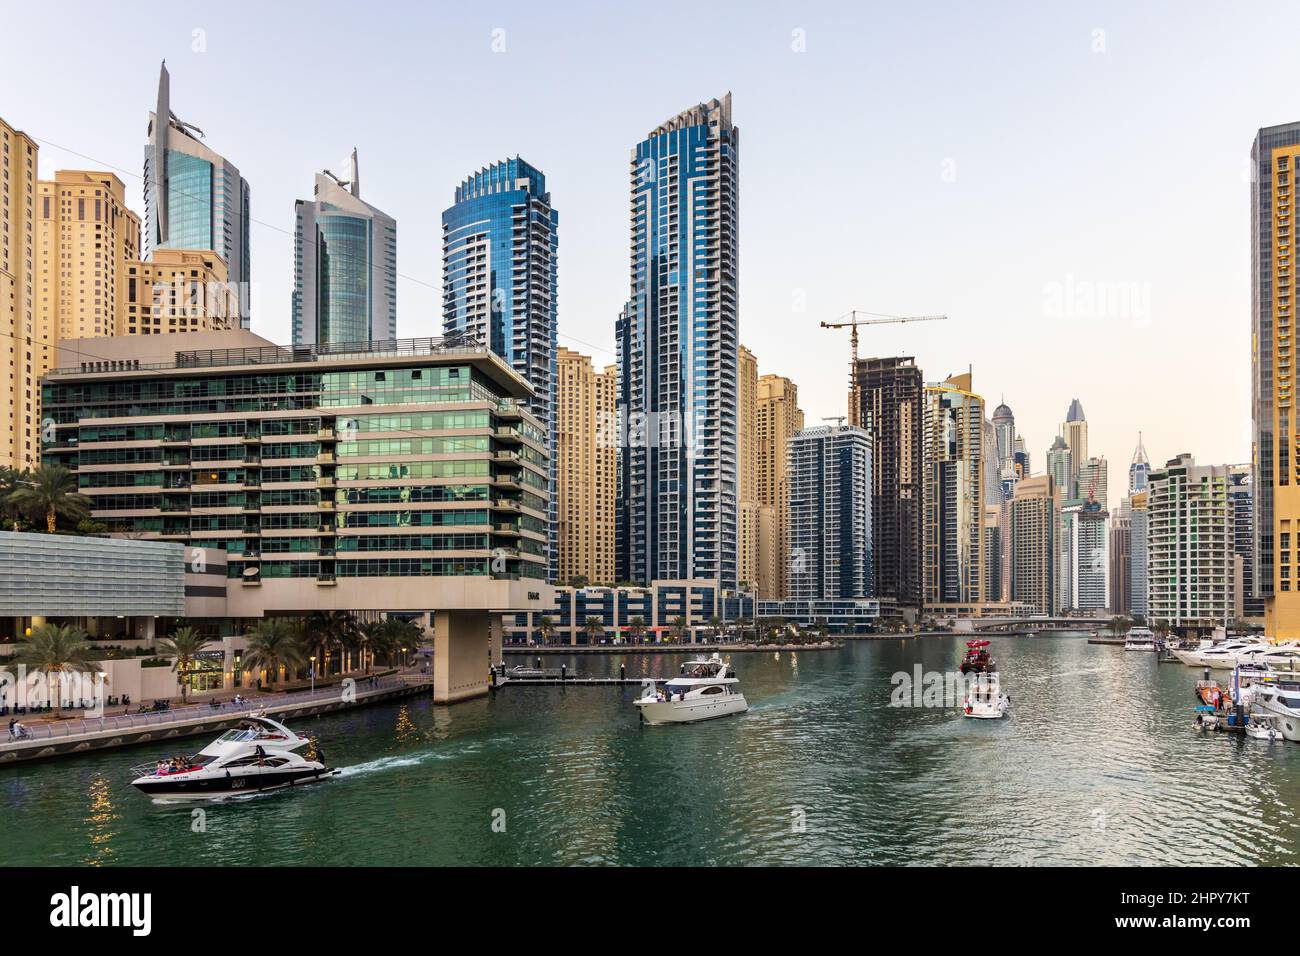 Yates y barcos que navegan en Dubai Marina, rodeado de numerosos rascacielos residenciales, restaurantes, tiendas y hoteles. EMIRATOS ÁRABES UNIDOS Foto de stock